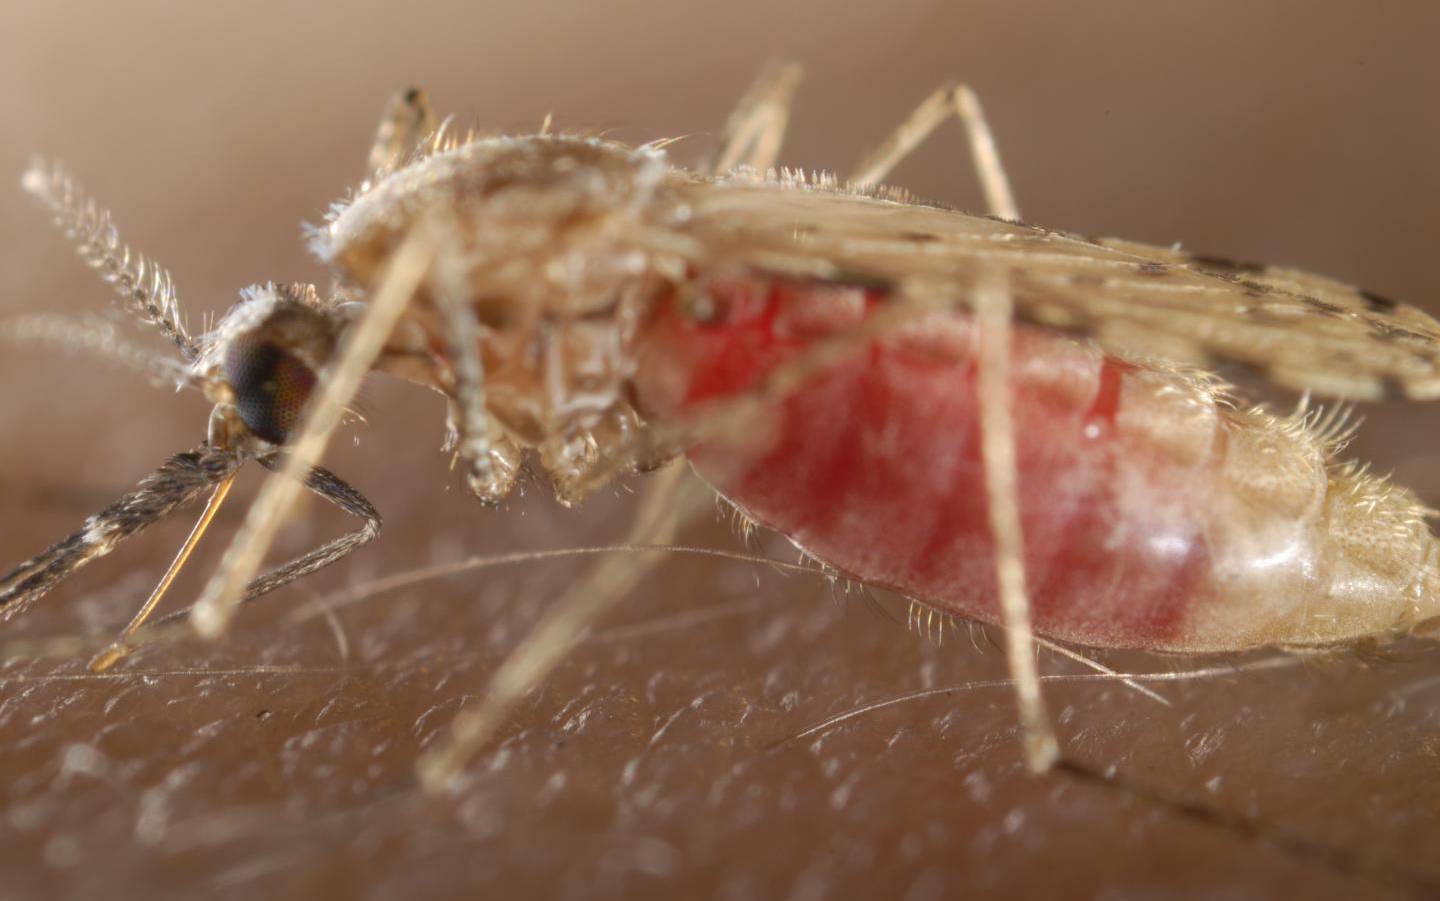 Комар как биологический вид